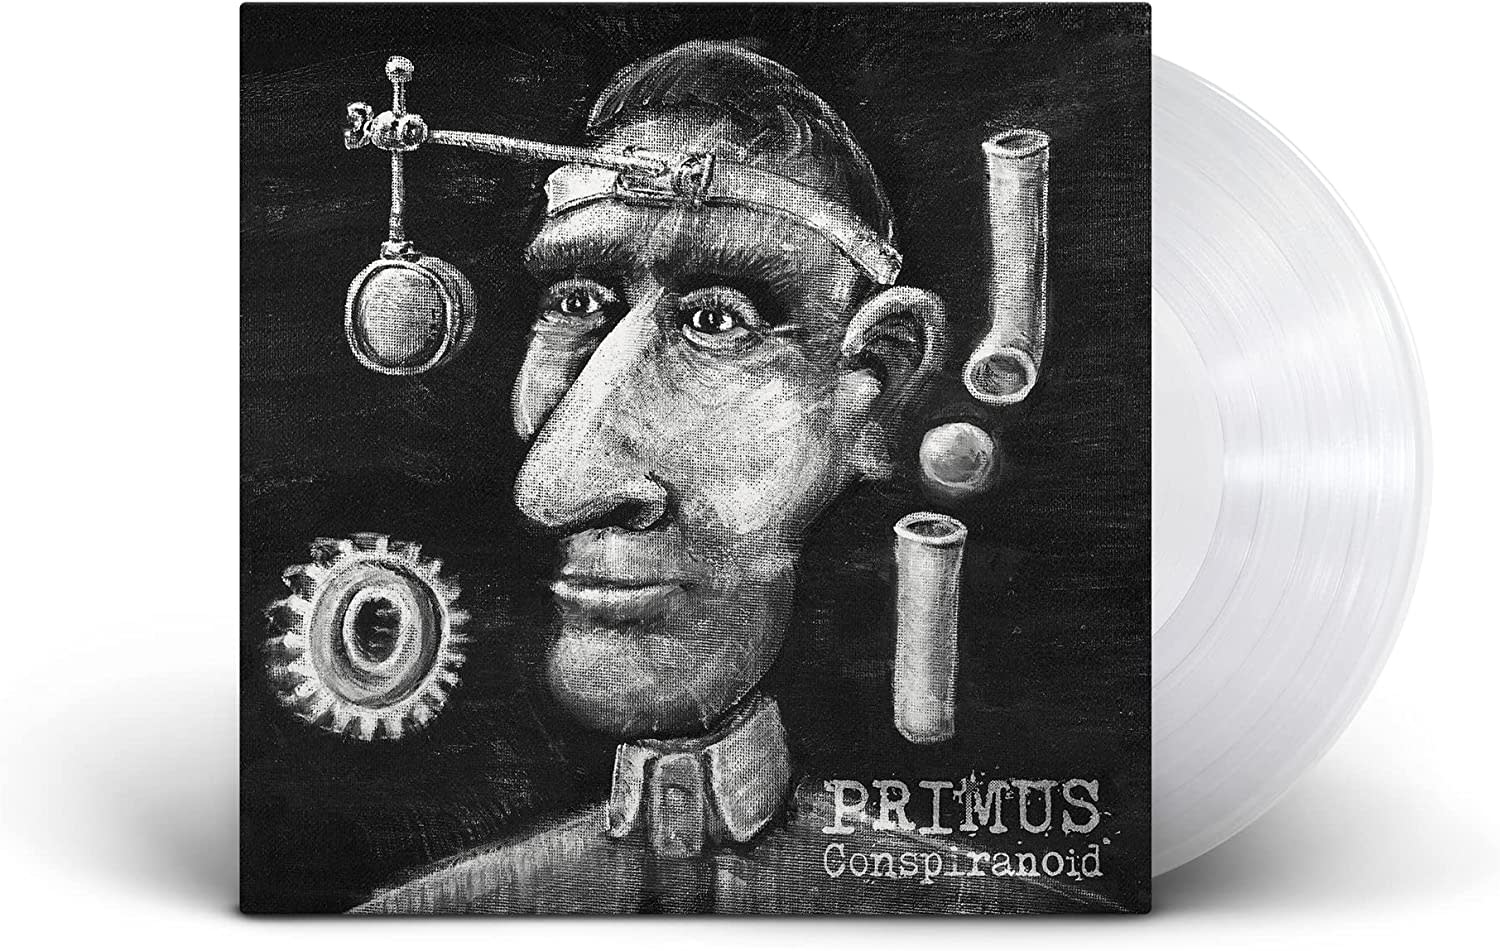 Primus – Conspiranoid